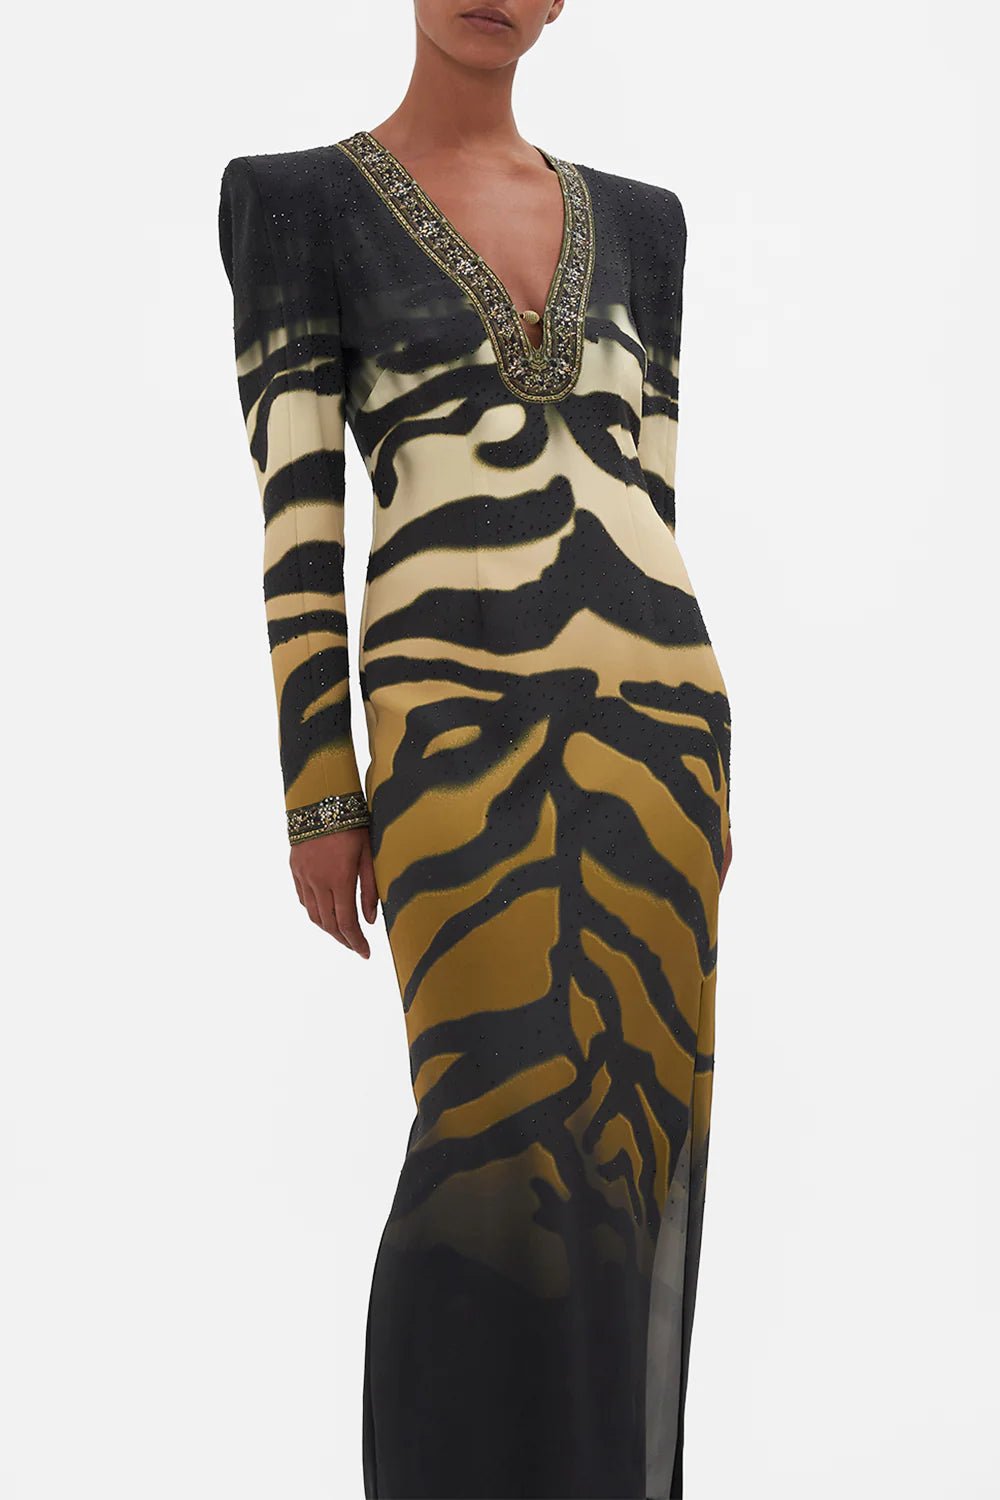 CAMILLA - Shoulder Pad Long Sleeve Dress Tame My Tiger - Camilla - Pinkhill - darwin fashion - darwin boutique